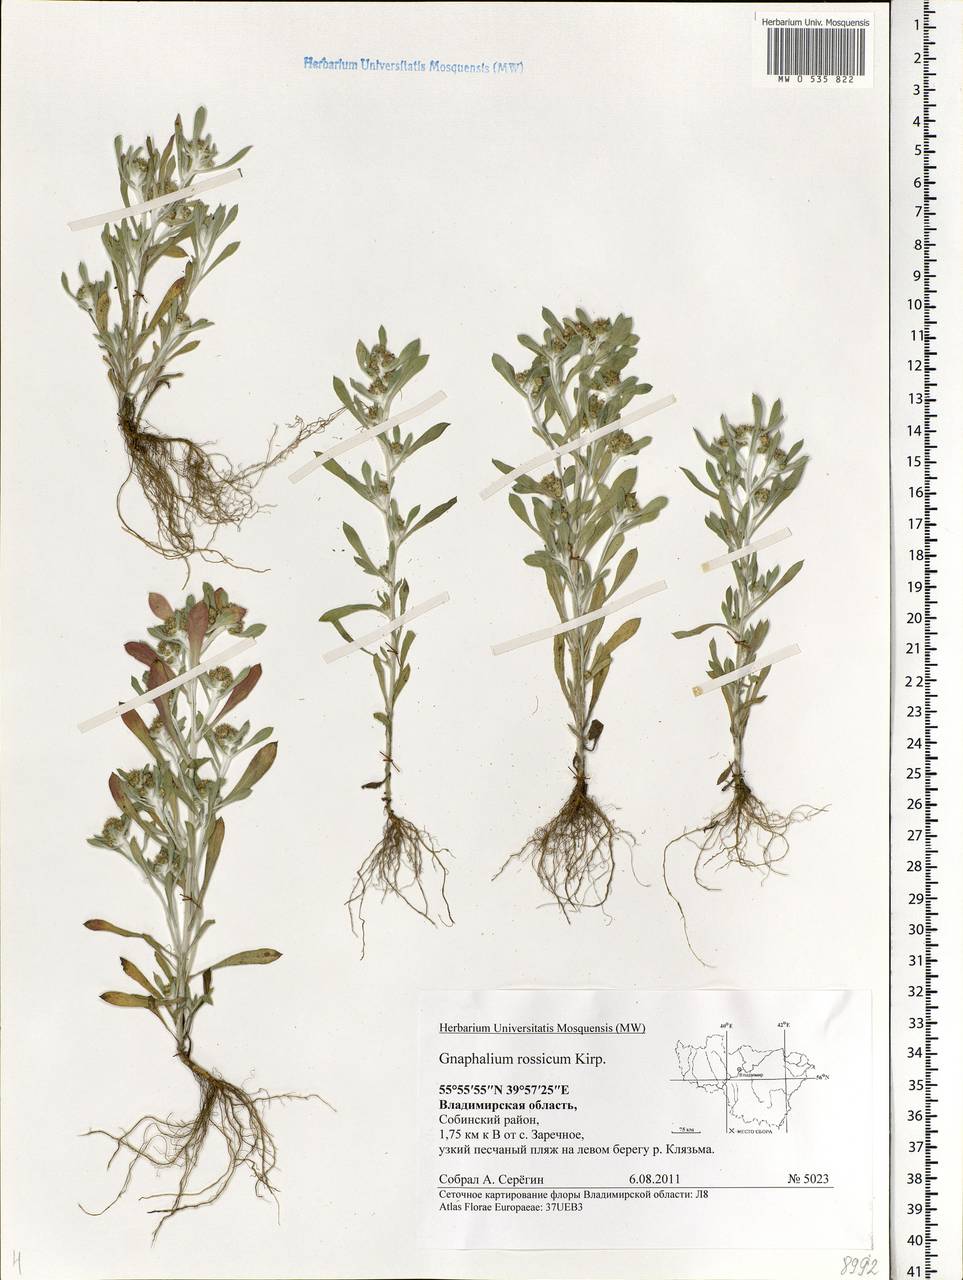 Gnaphalium rossicum Kirp., Eastern Europe, Central region (E4) (Russia)